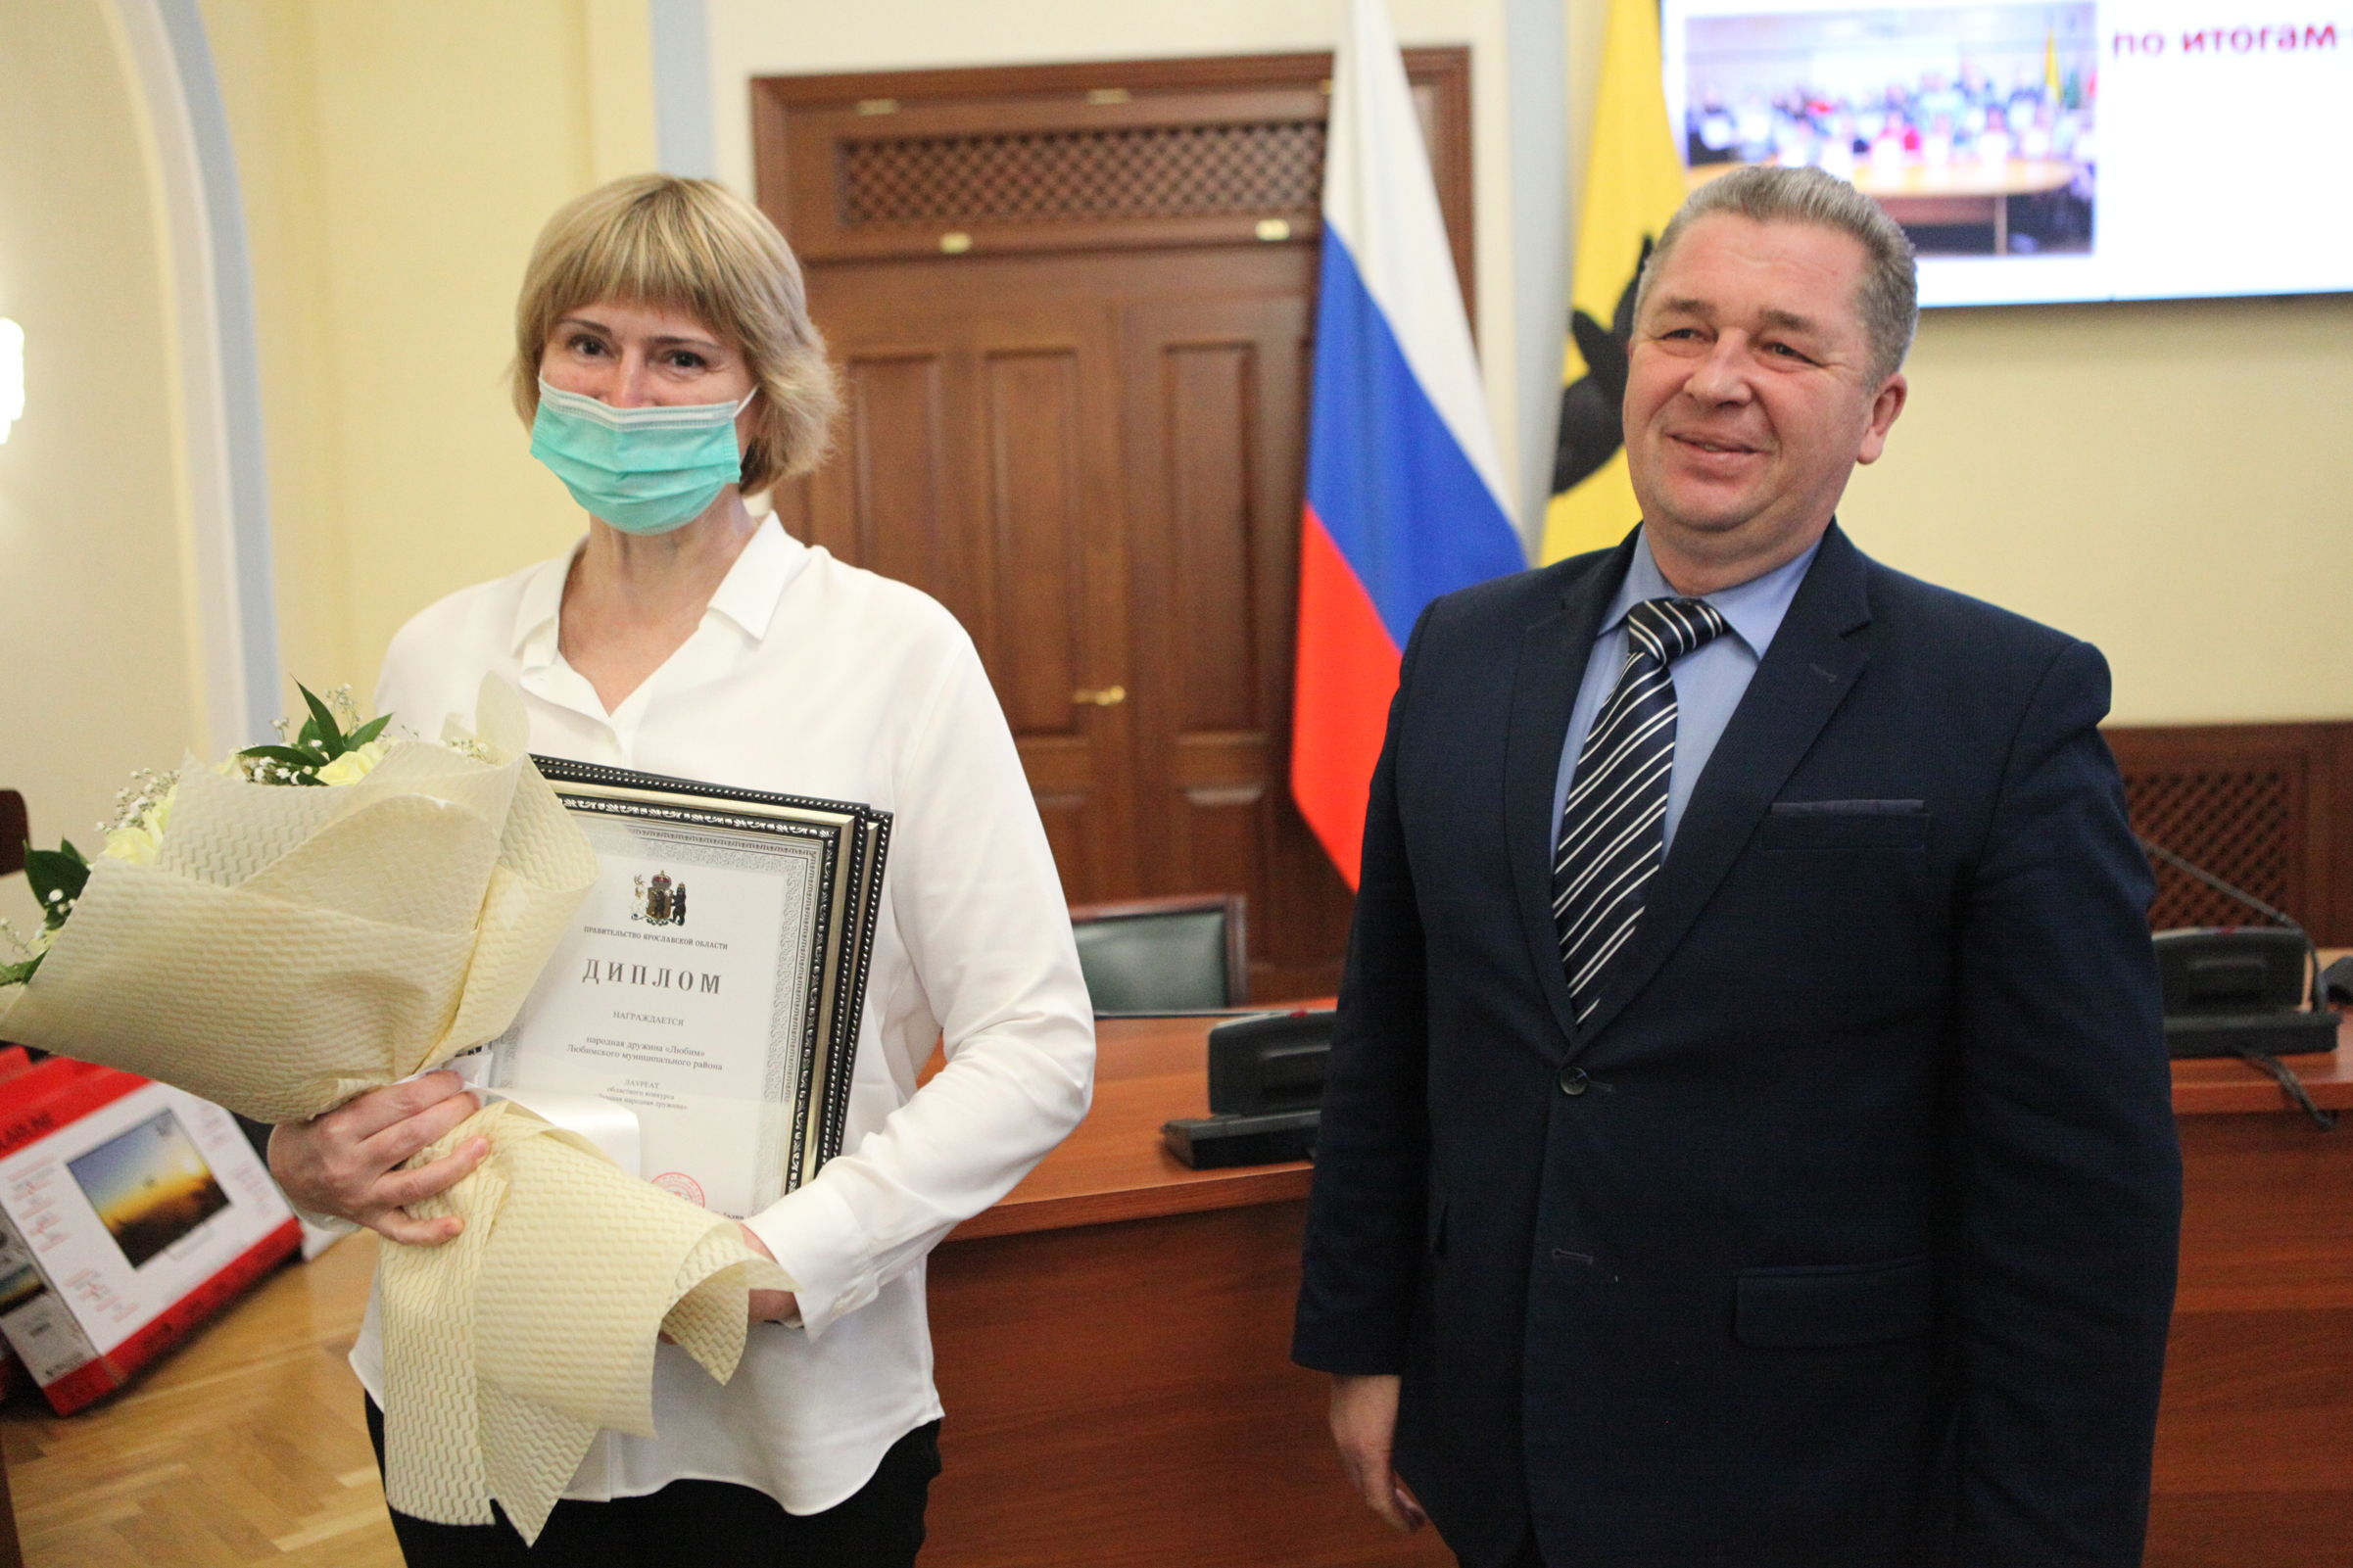 Лучшим народным дружинникам Ярославской области вручили награды